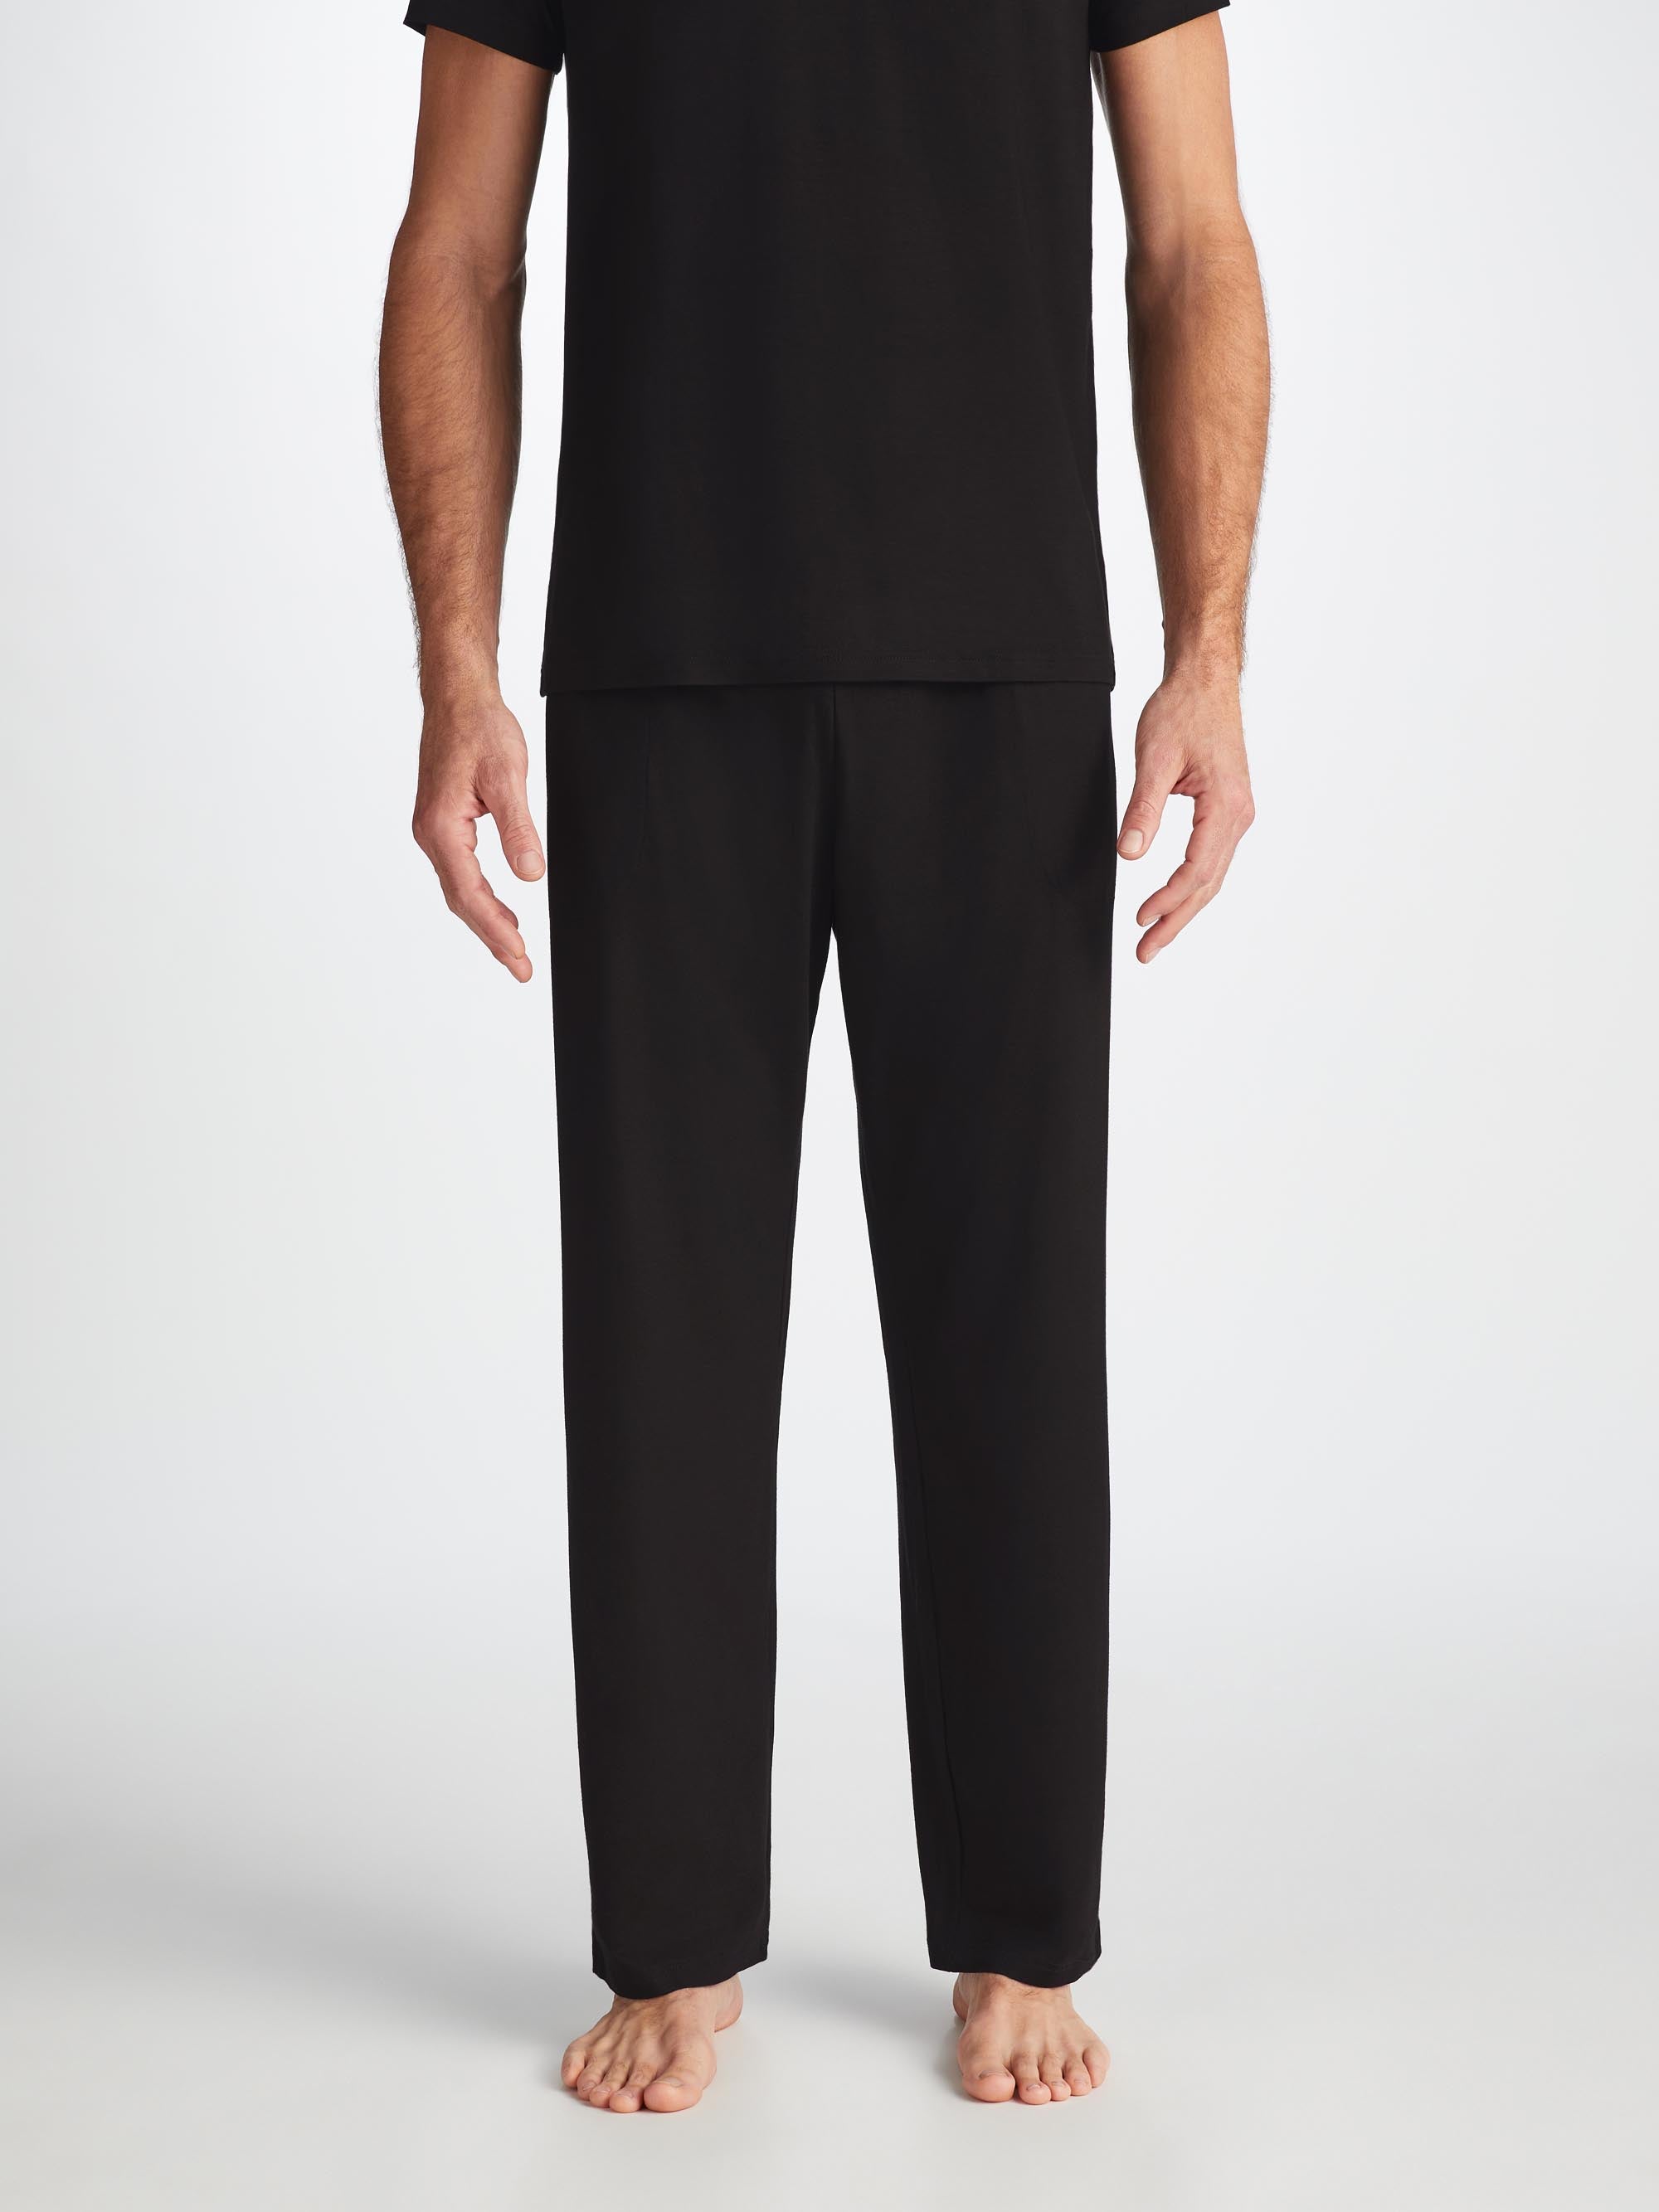 Men's Lounge Trousers Basel Micro Modal Stretch Black